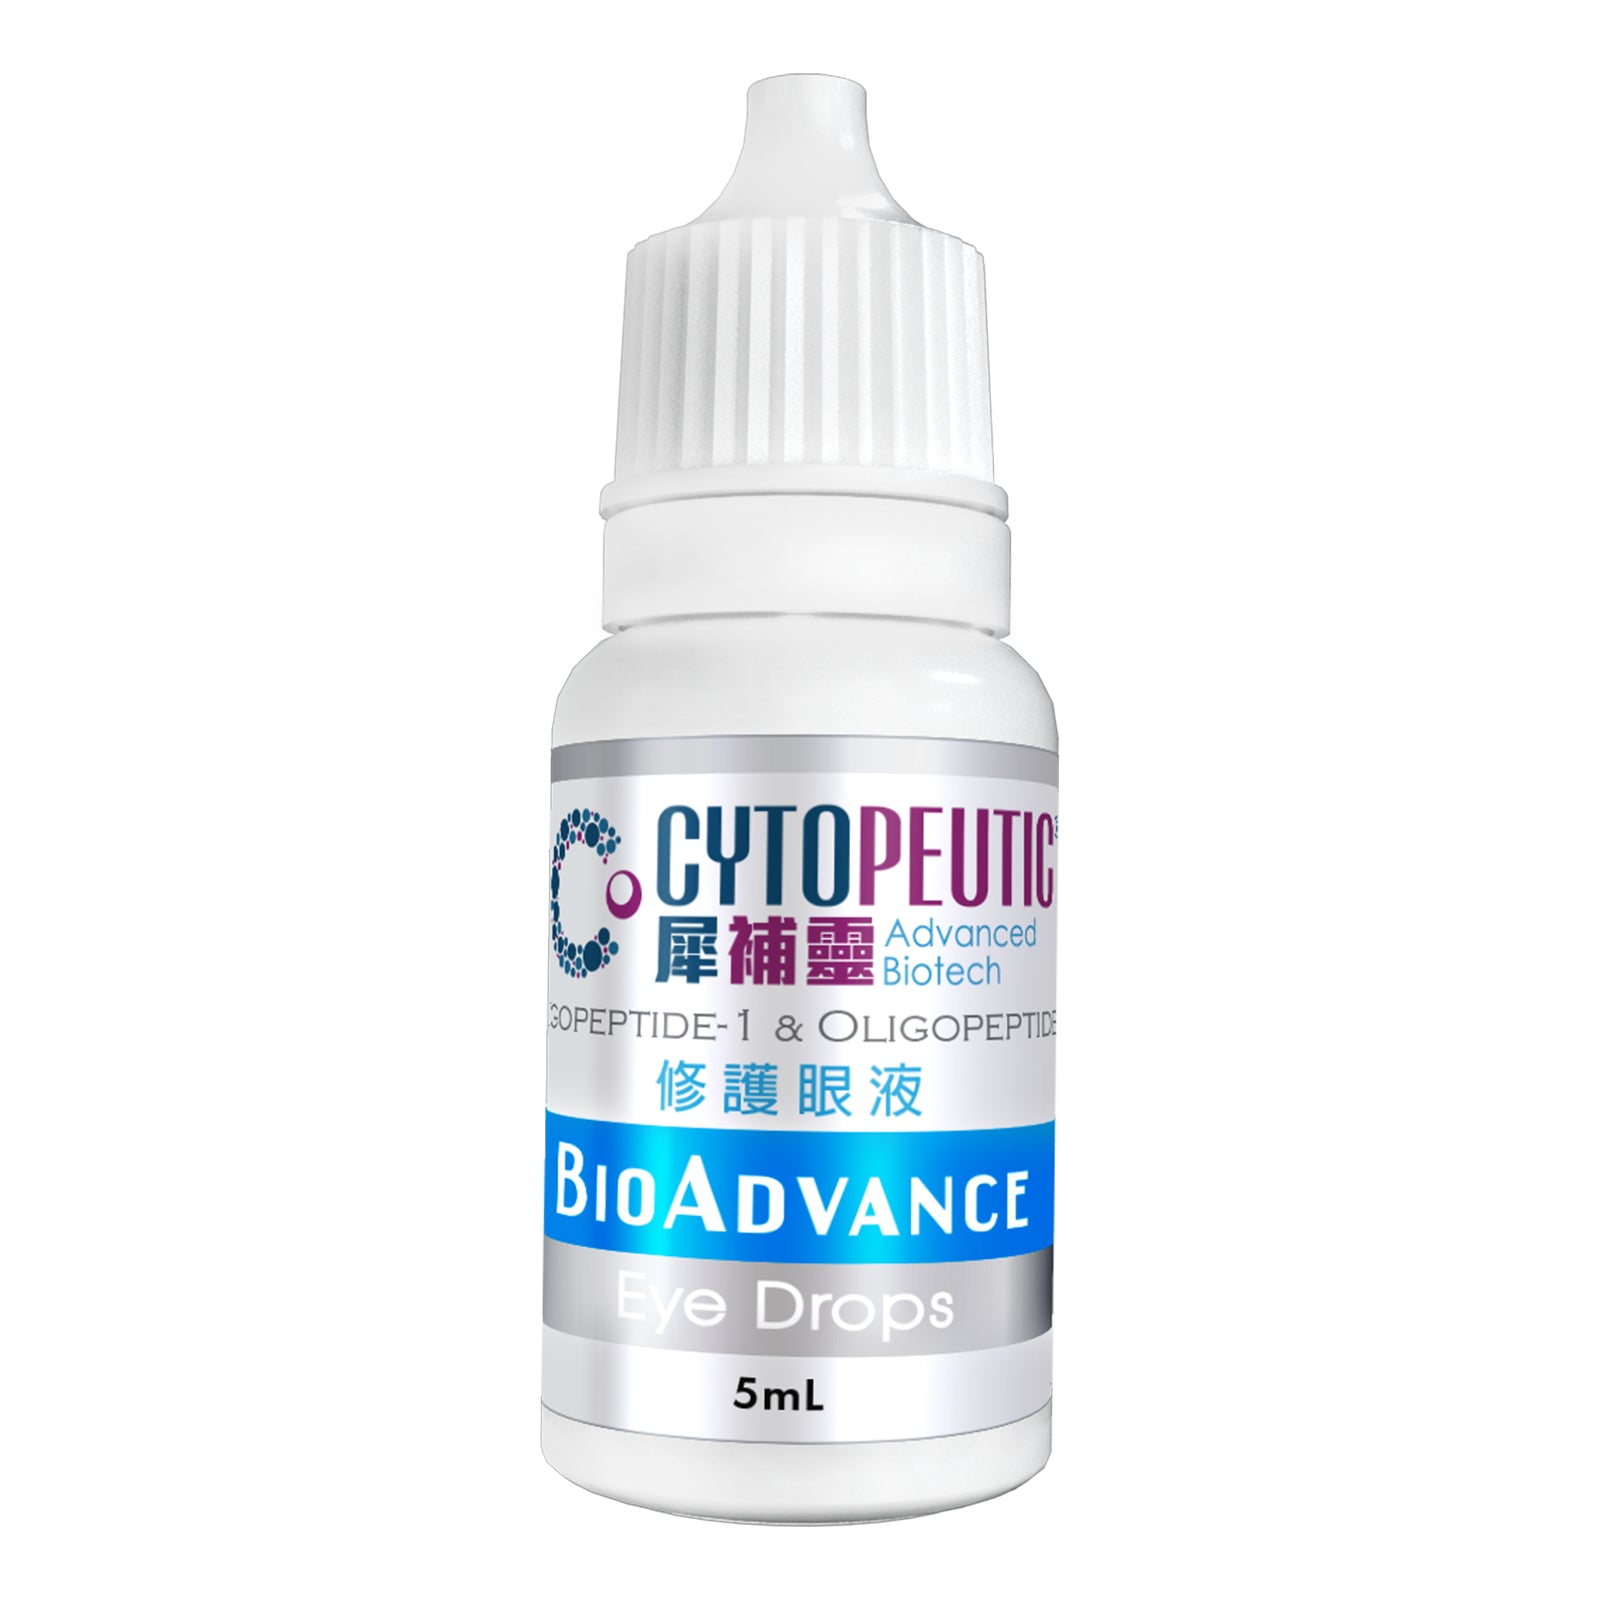 Cytopeutic BioAdvance Eye Drops 修護眼液 5ml